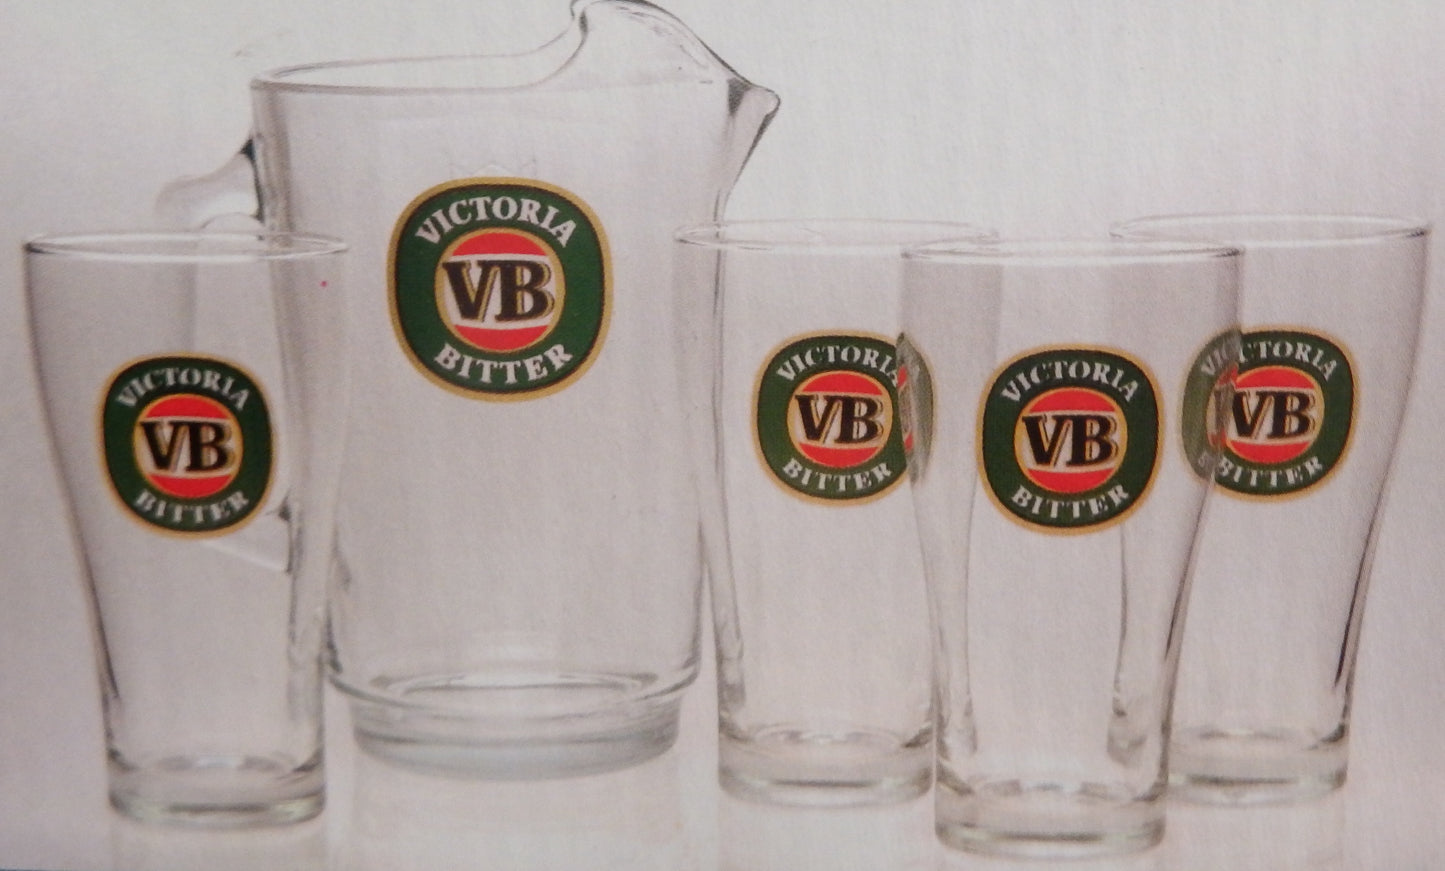 VB GLASS JUG with Set of 4 Schooner Glasses